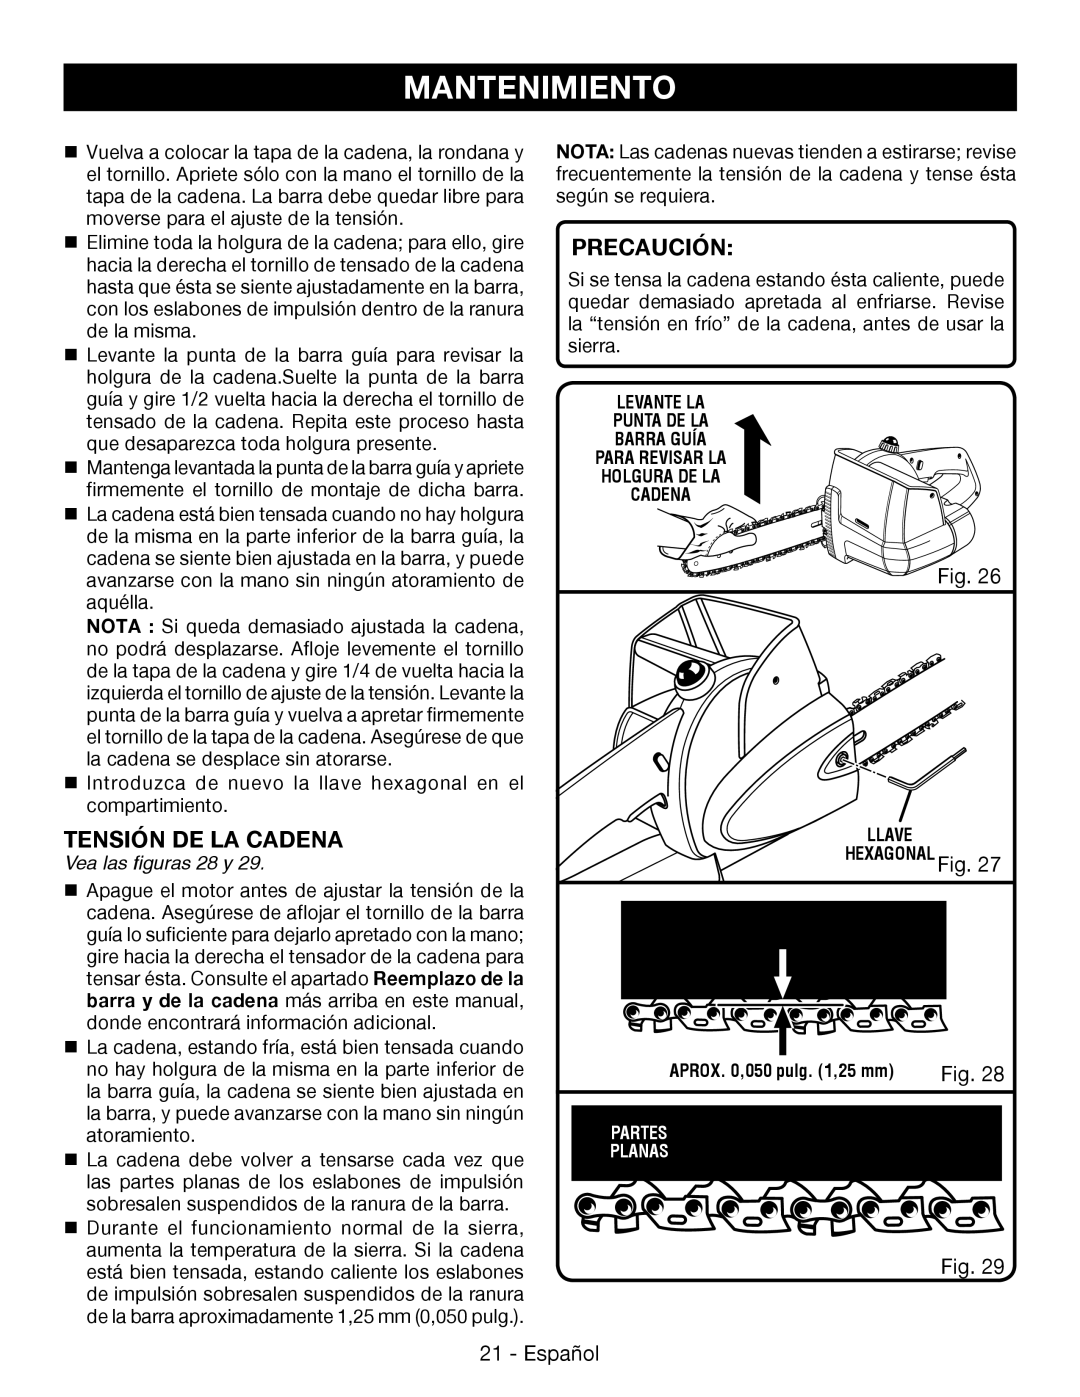 Ryobi P545 manuel dutilisation Tensión De La Cadena, Mantenimiento, Precaución, Fig, Vea las figuras 28 y 